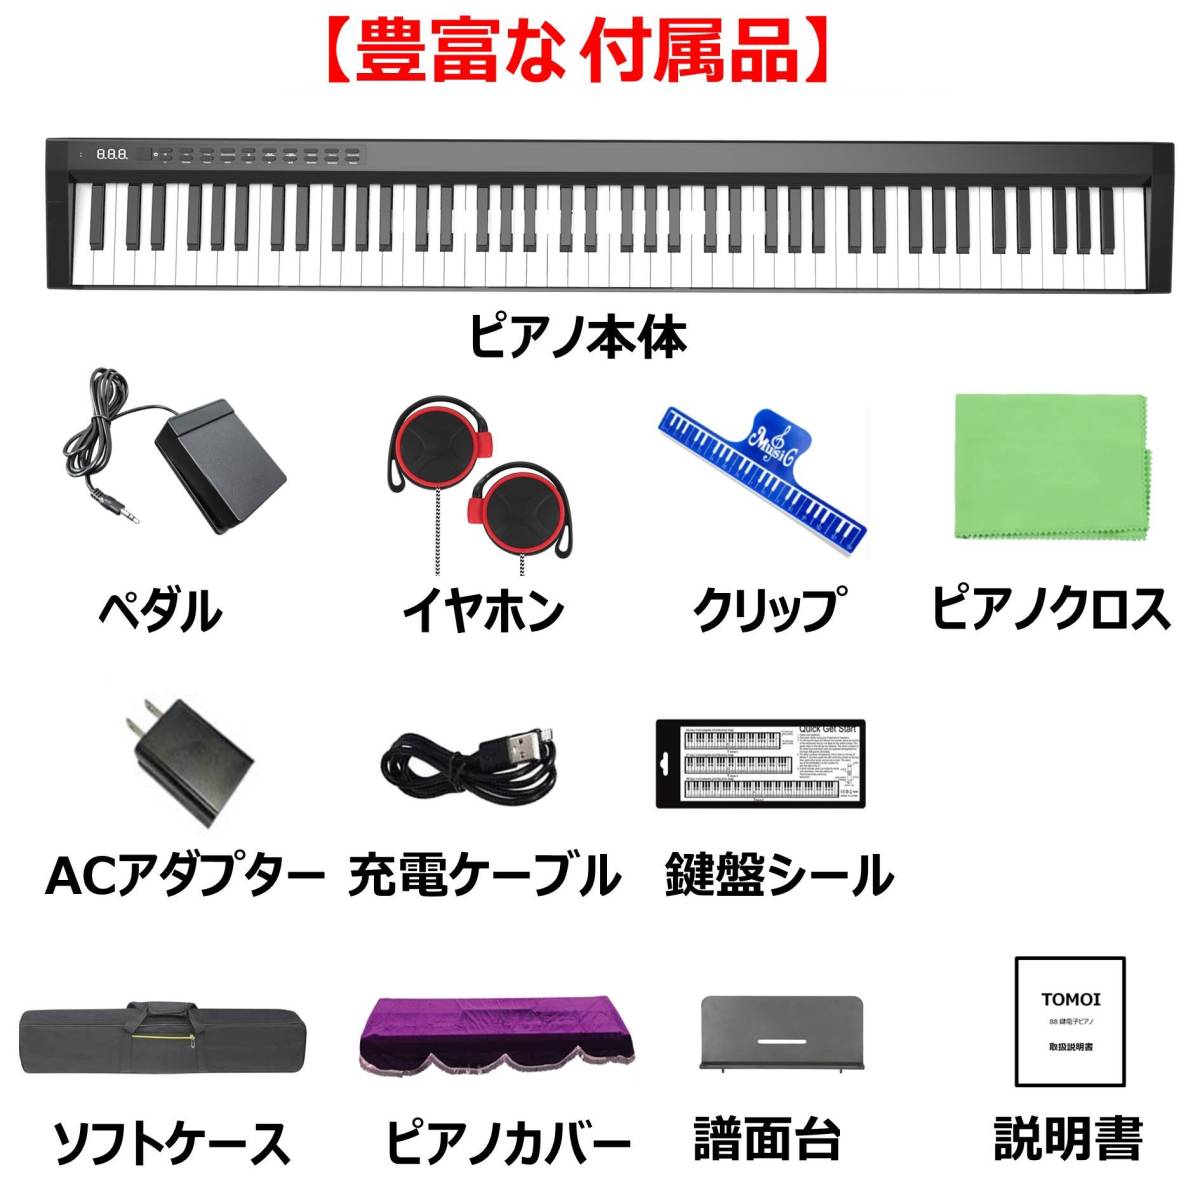  электронное пианино 88 клавиатура педаль пюпитр слуховай аппарат приложен MIDI беспроводной MIDI мягкий чехол фортепьяно покрытие 